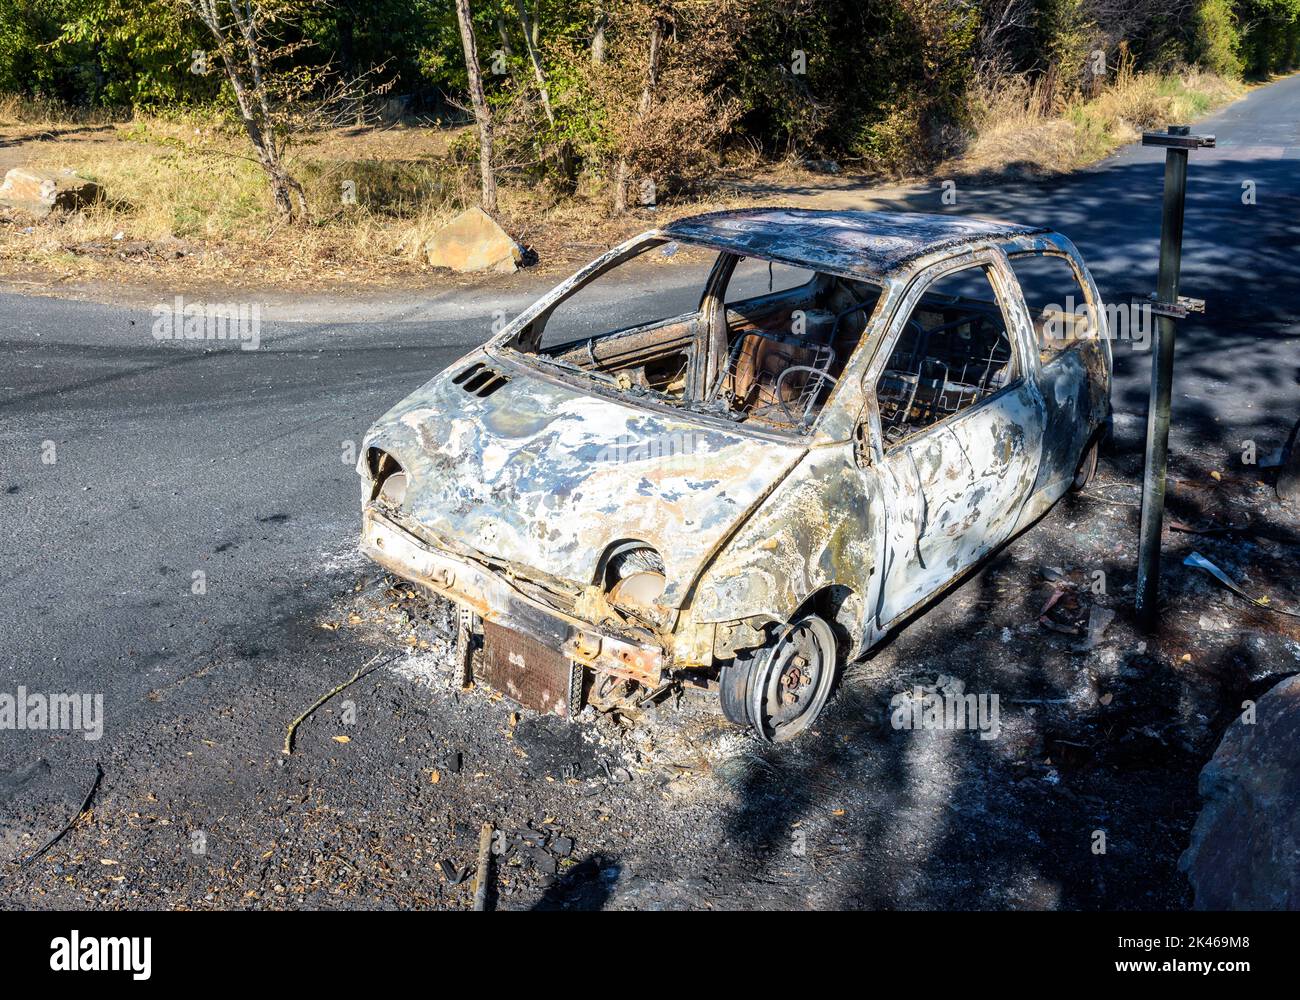 Un coche de la ciudad se quemó en una calle discreta de un barrio sensible. Foto de stock